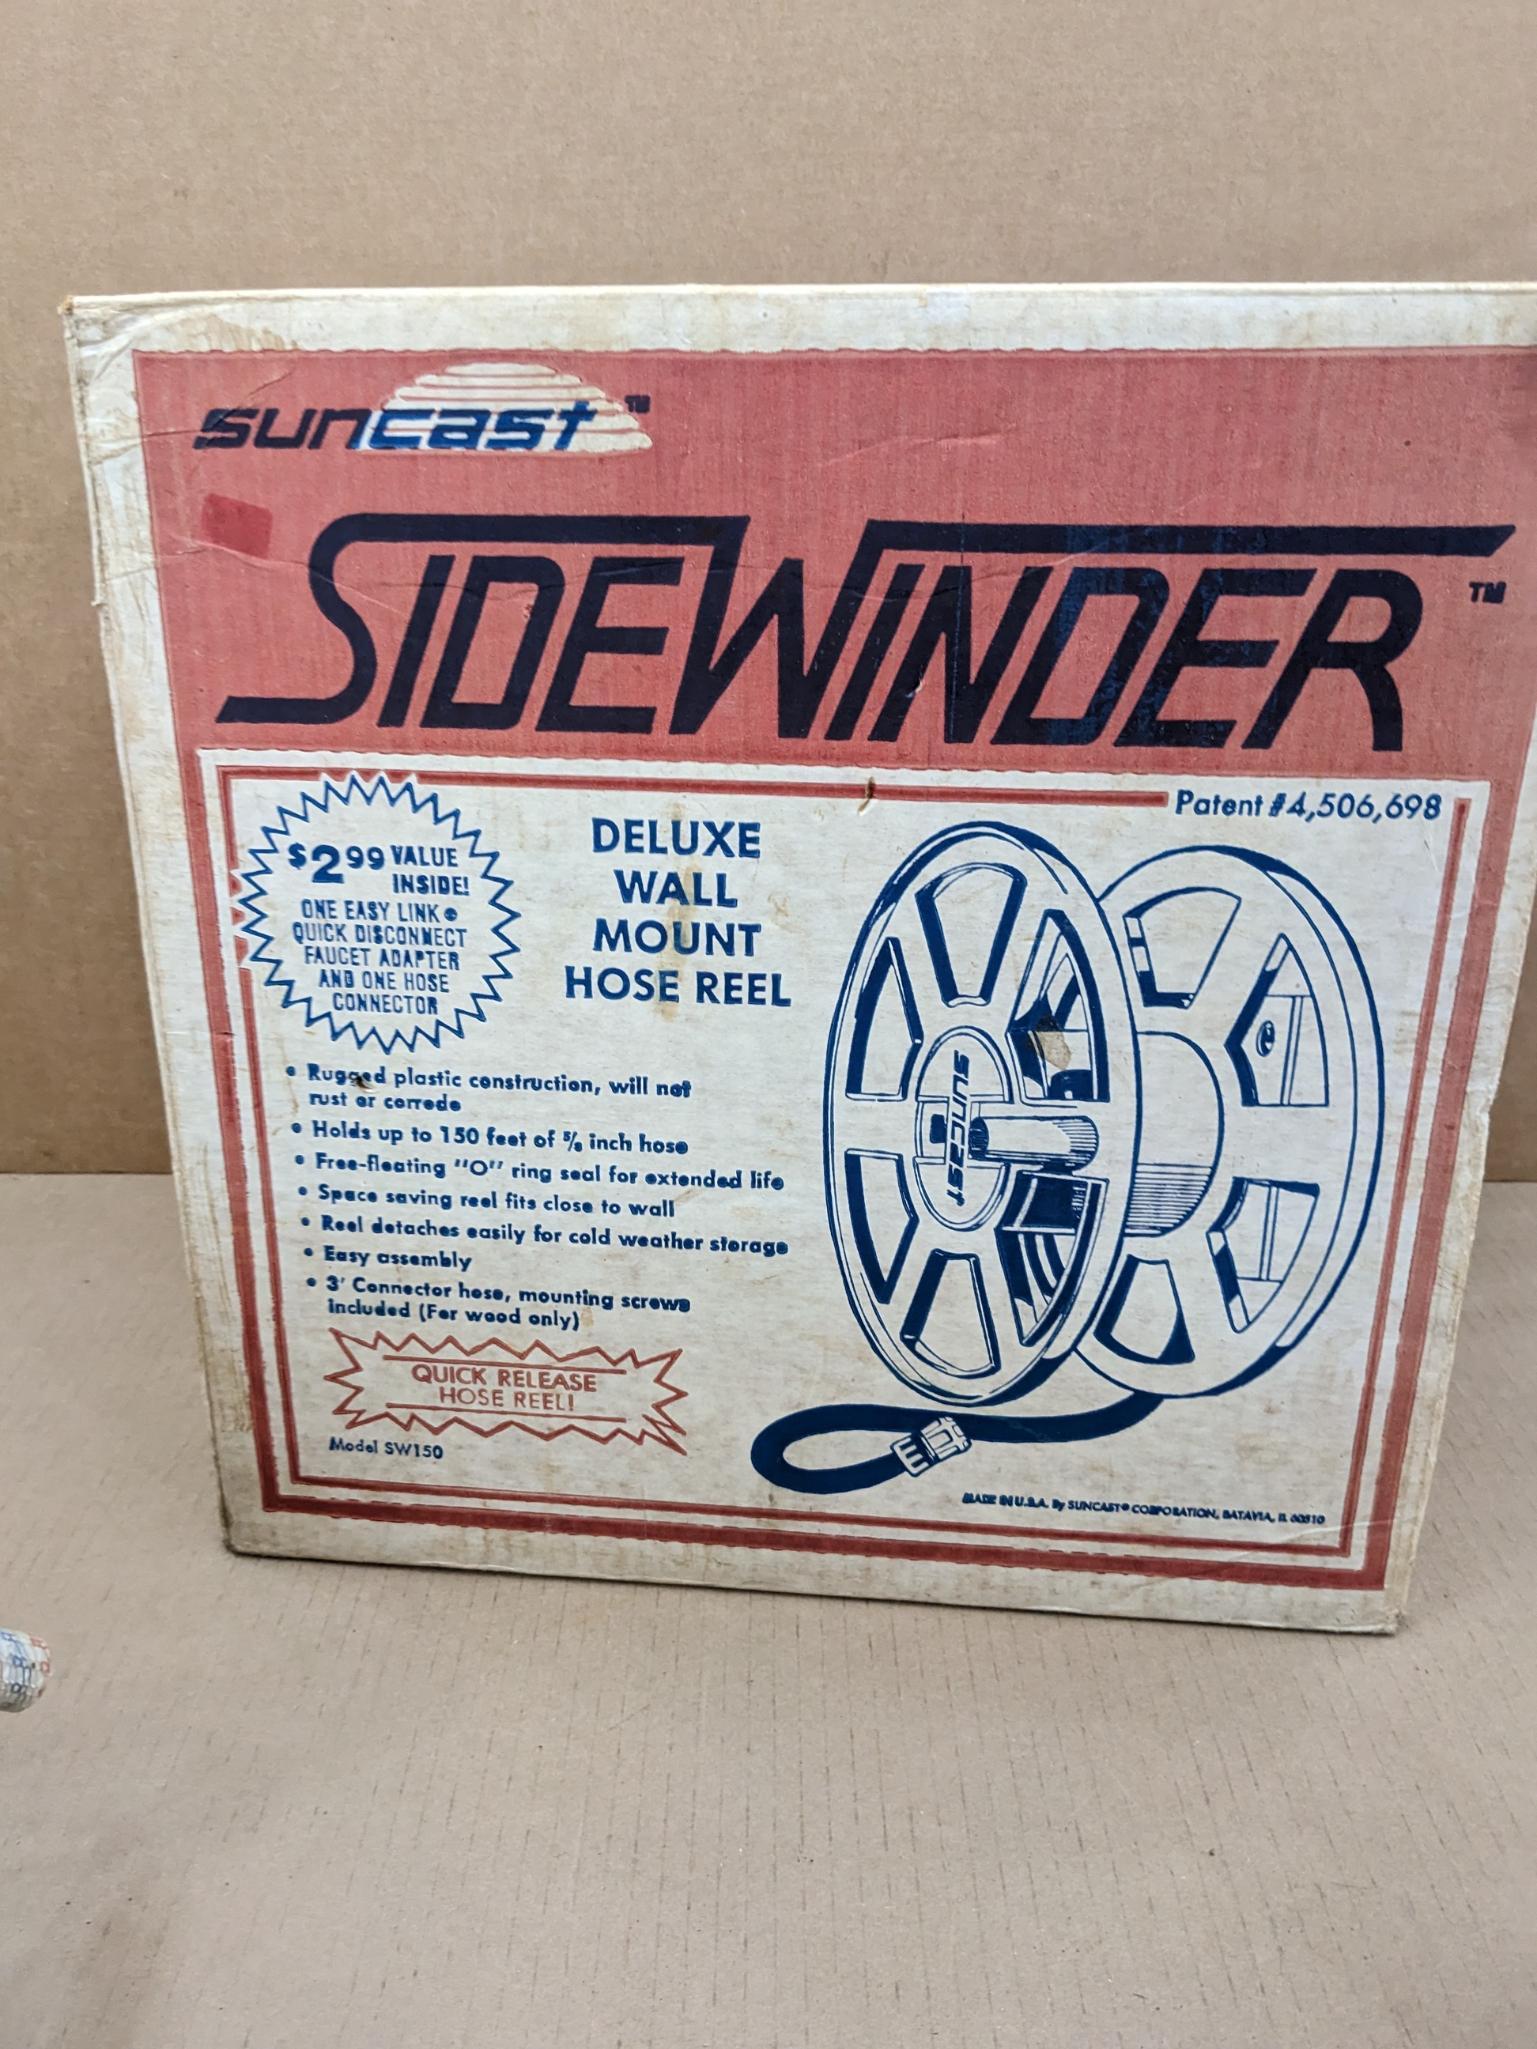 Sidewinder® - Suncast® Corporation